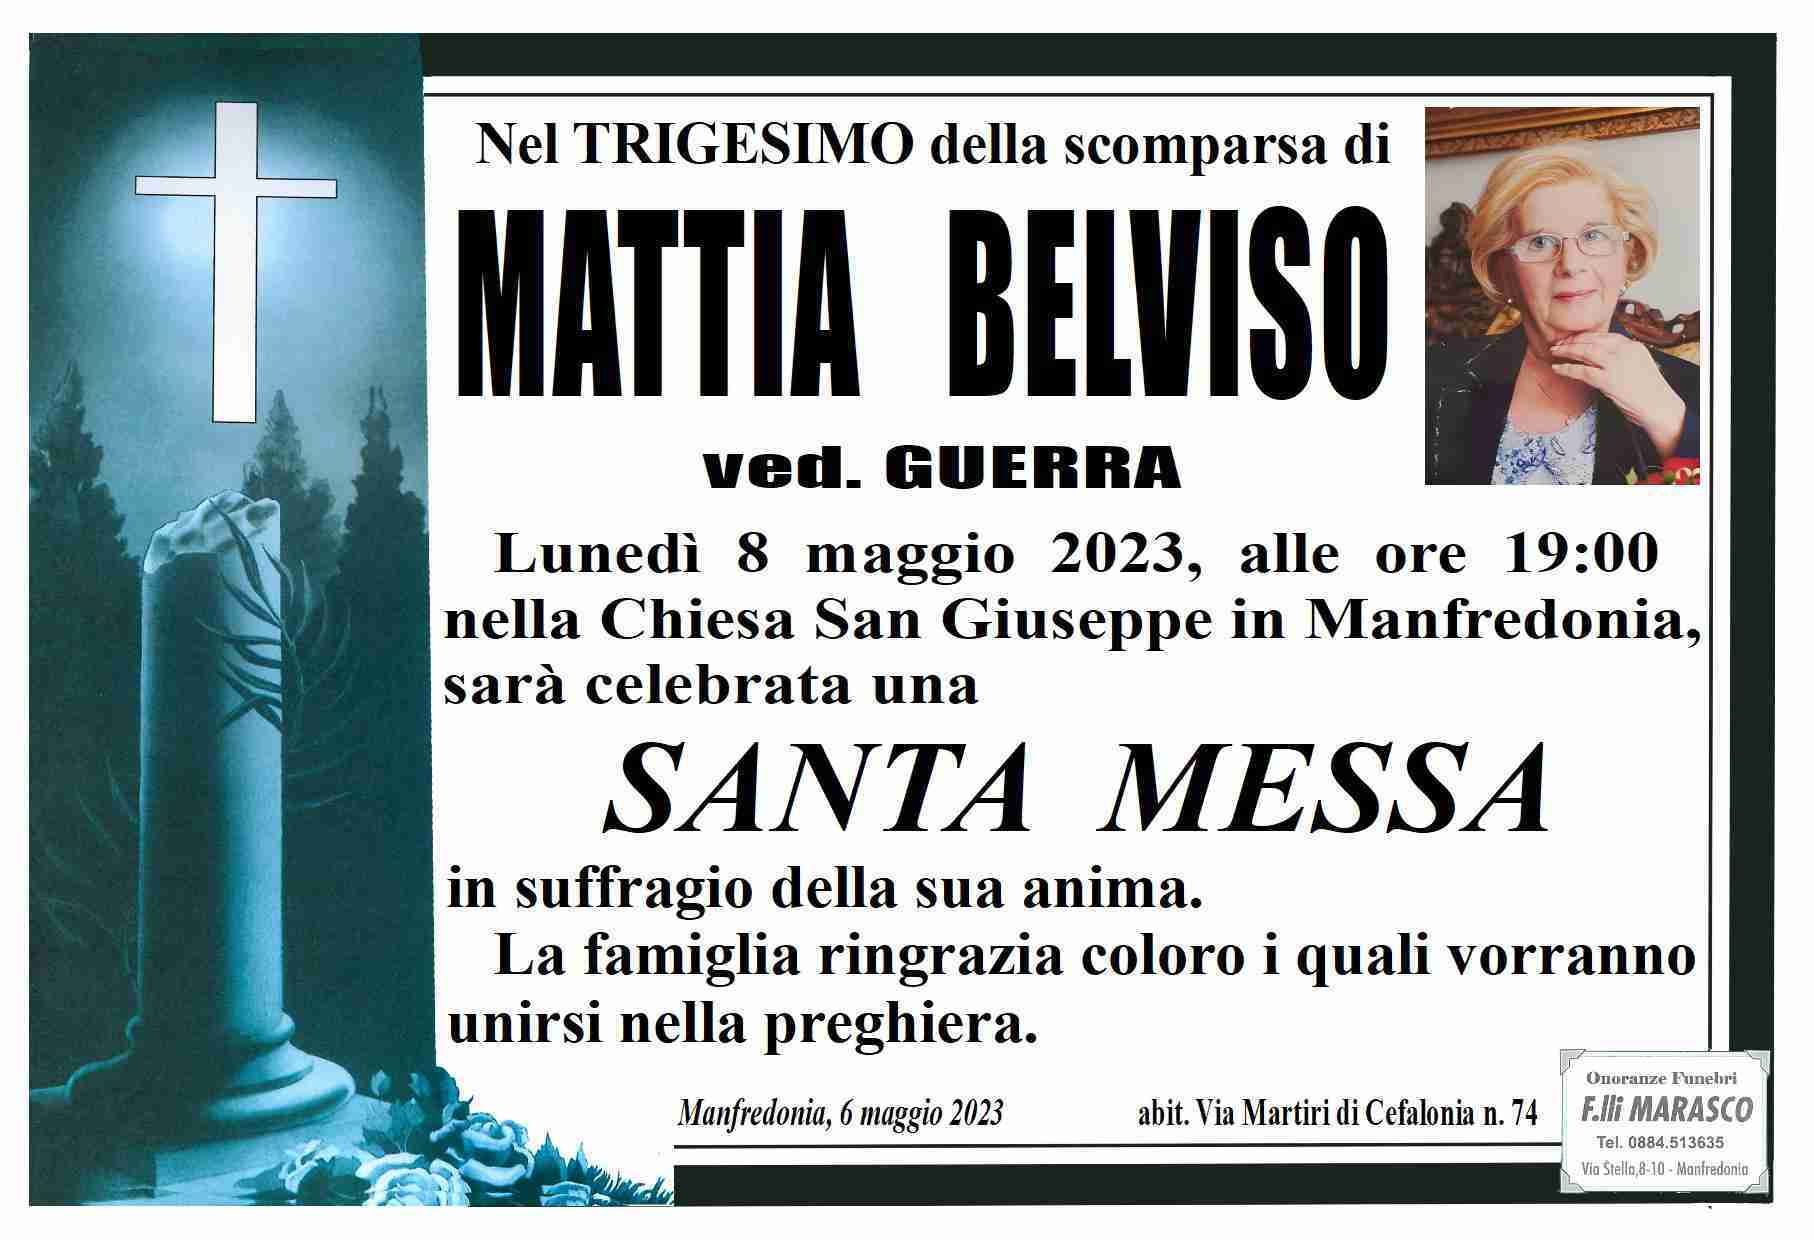 Mattia Belviso